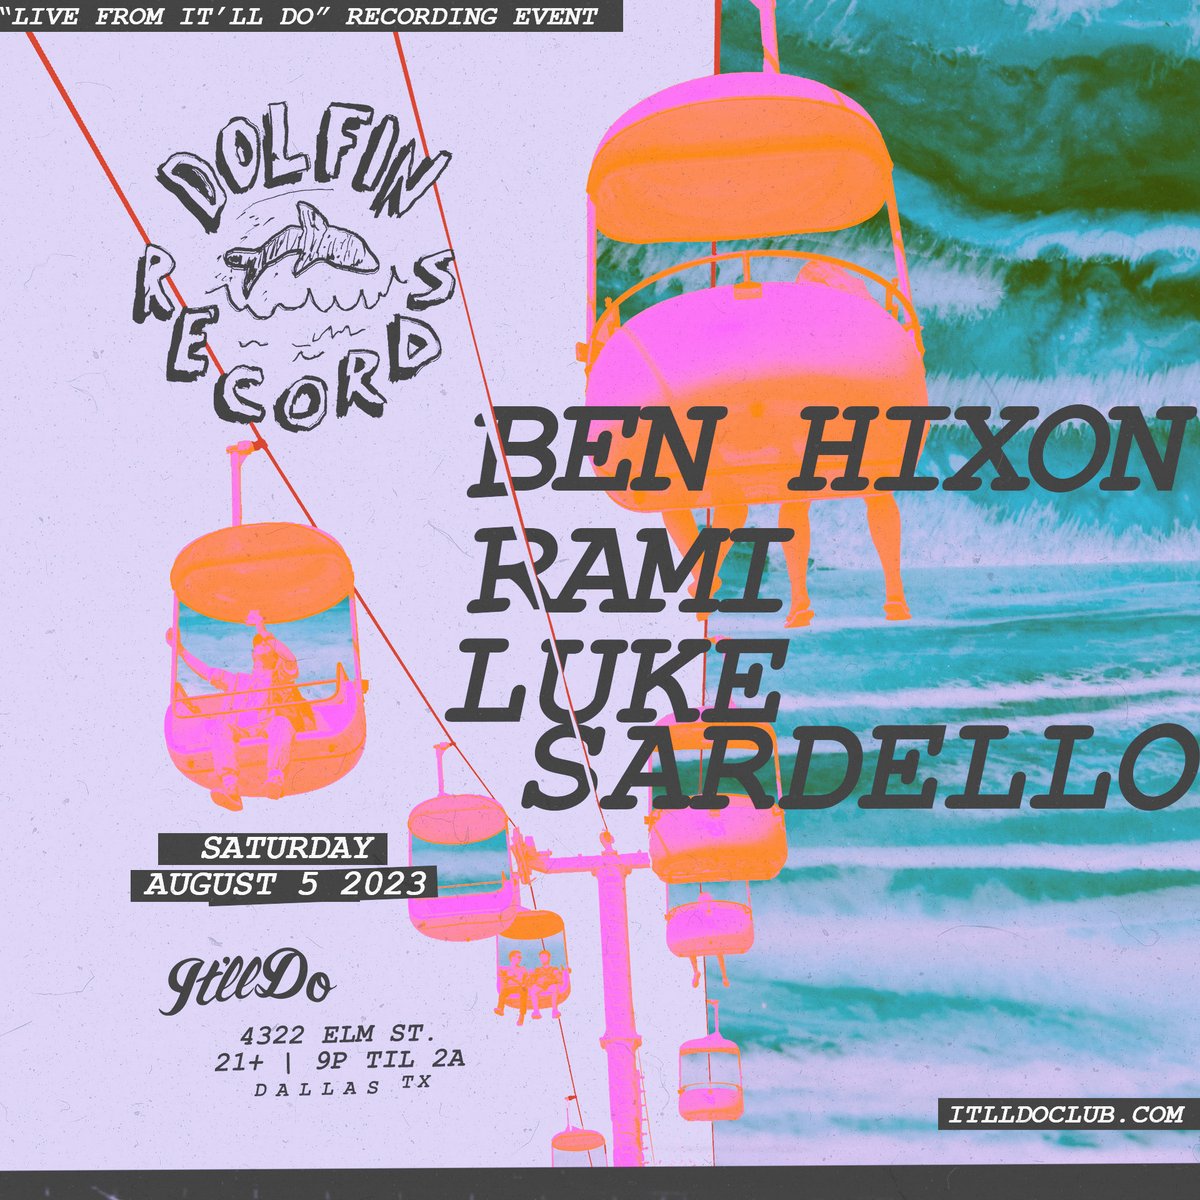 ➡️soundcloud.com/classic-music-… Check out @ben_hixon's #HotMix for @lukesolomon via @classicmusicco! Catch Ben Hixon for the @DolfinRecords nite at @itlldoclub on 08.05.2023 with @rami_tla & @lukesardello!